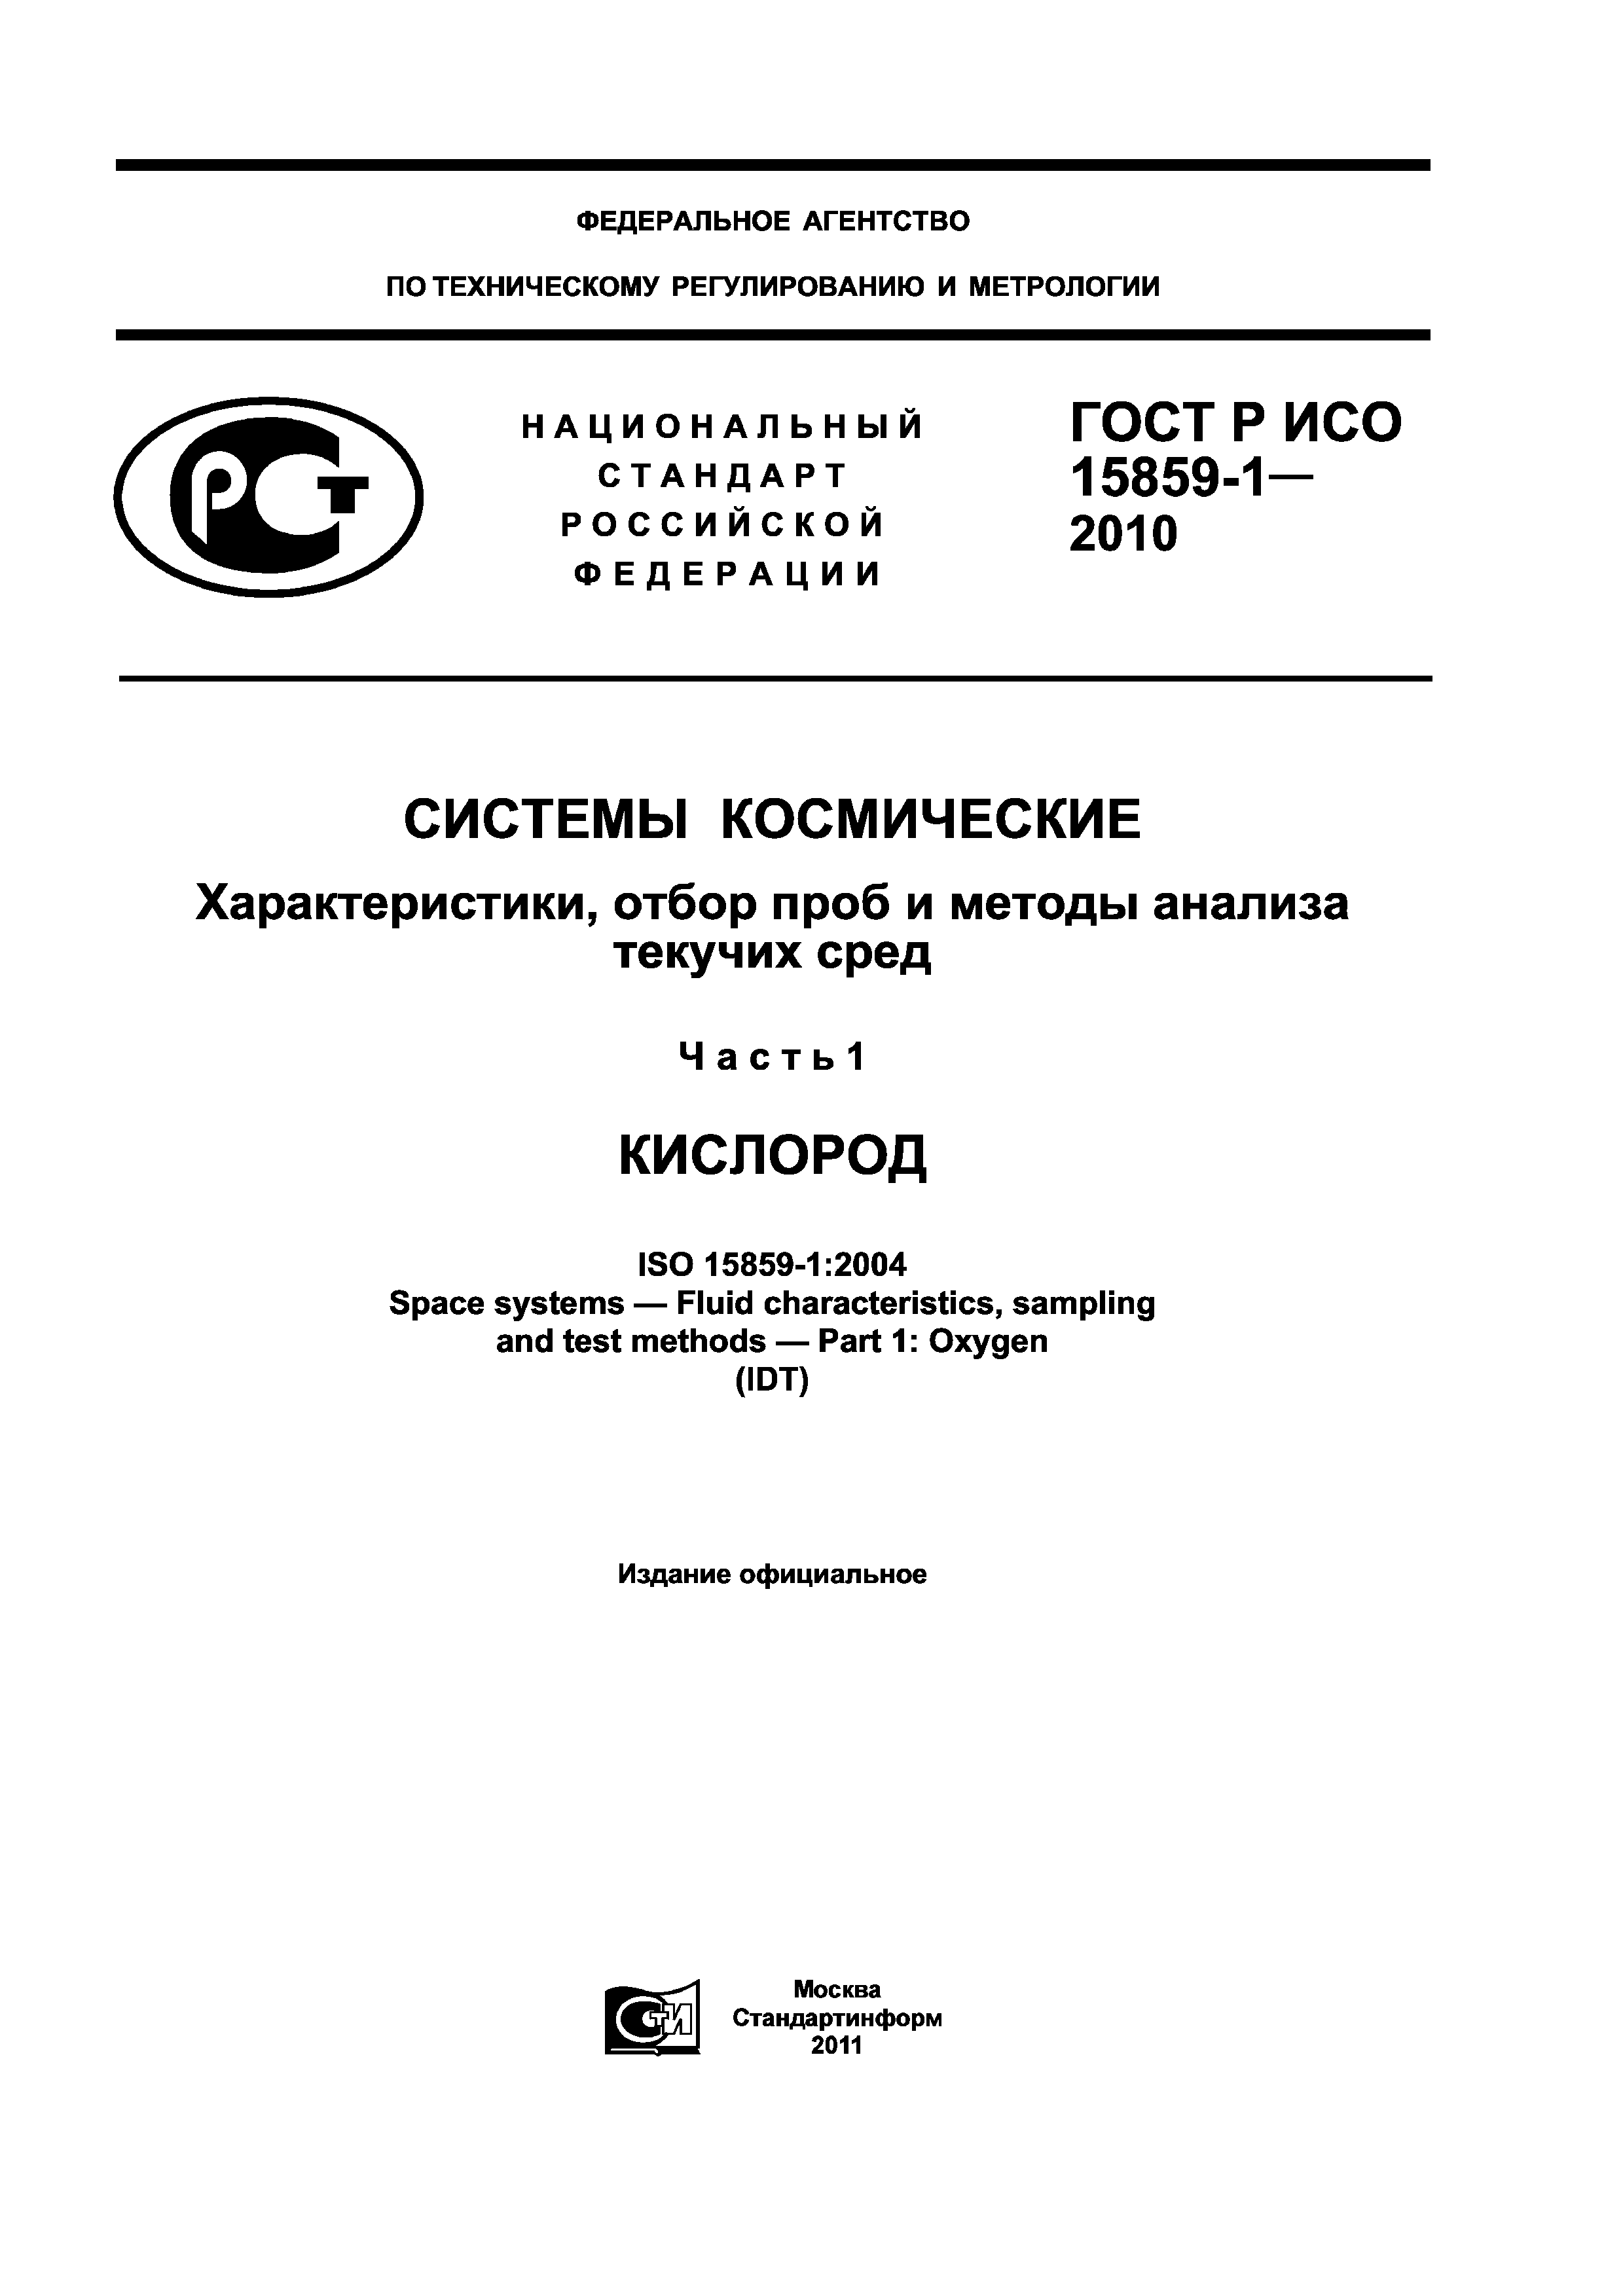 ГОСТ Р ИСО 15859-1-2010